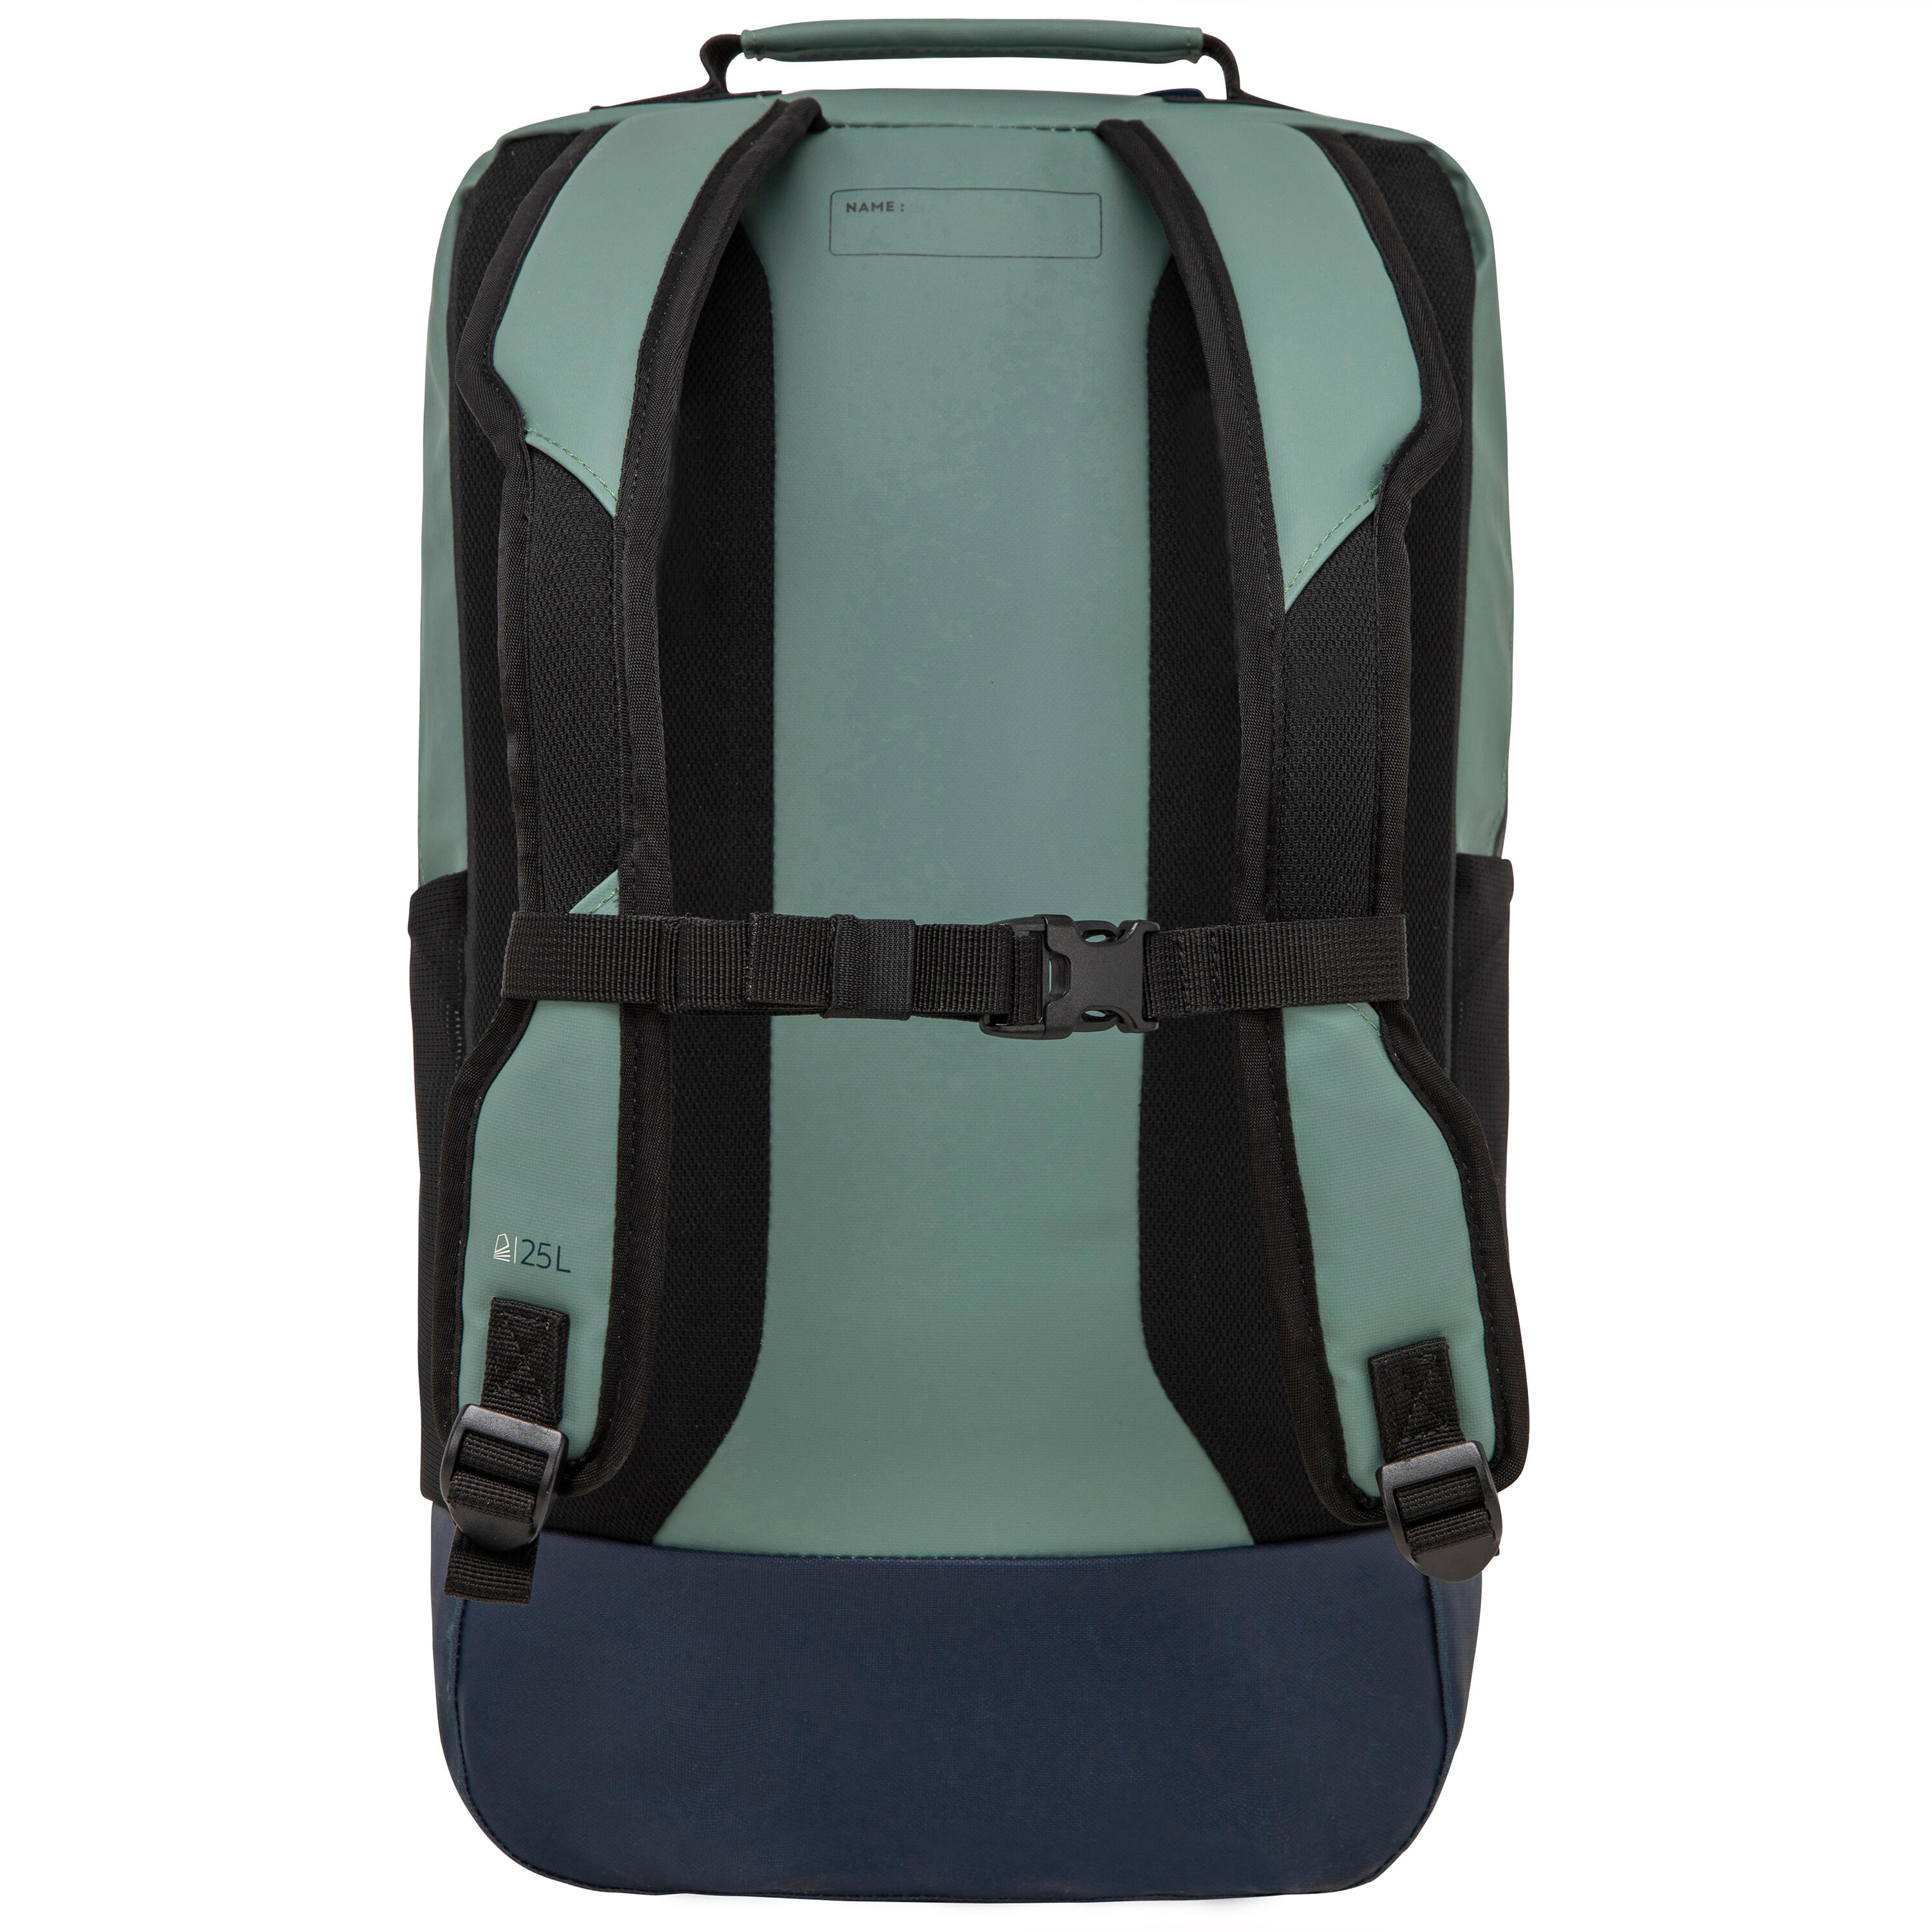 Waterproof backpack 25 litres - Kaki 4/11